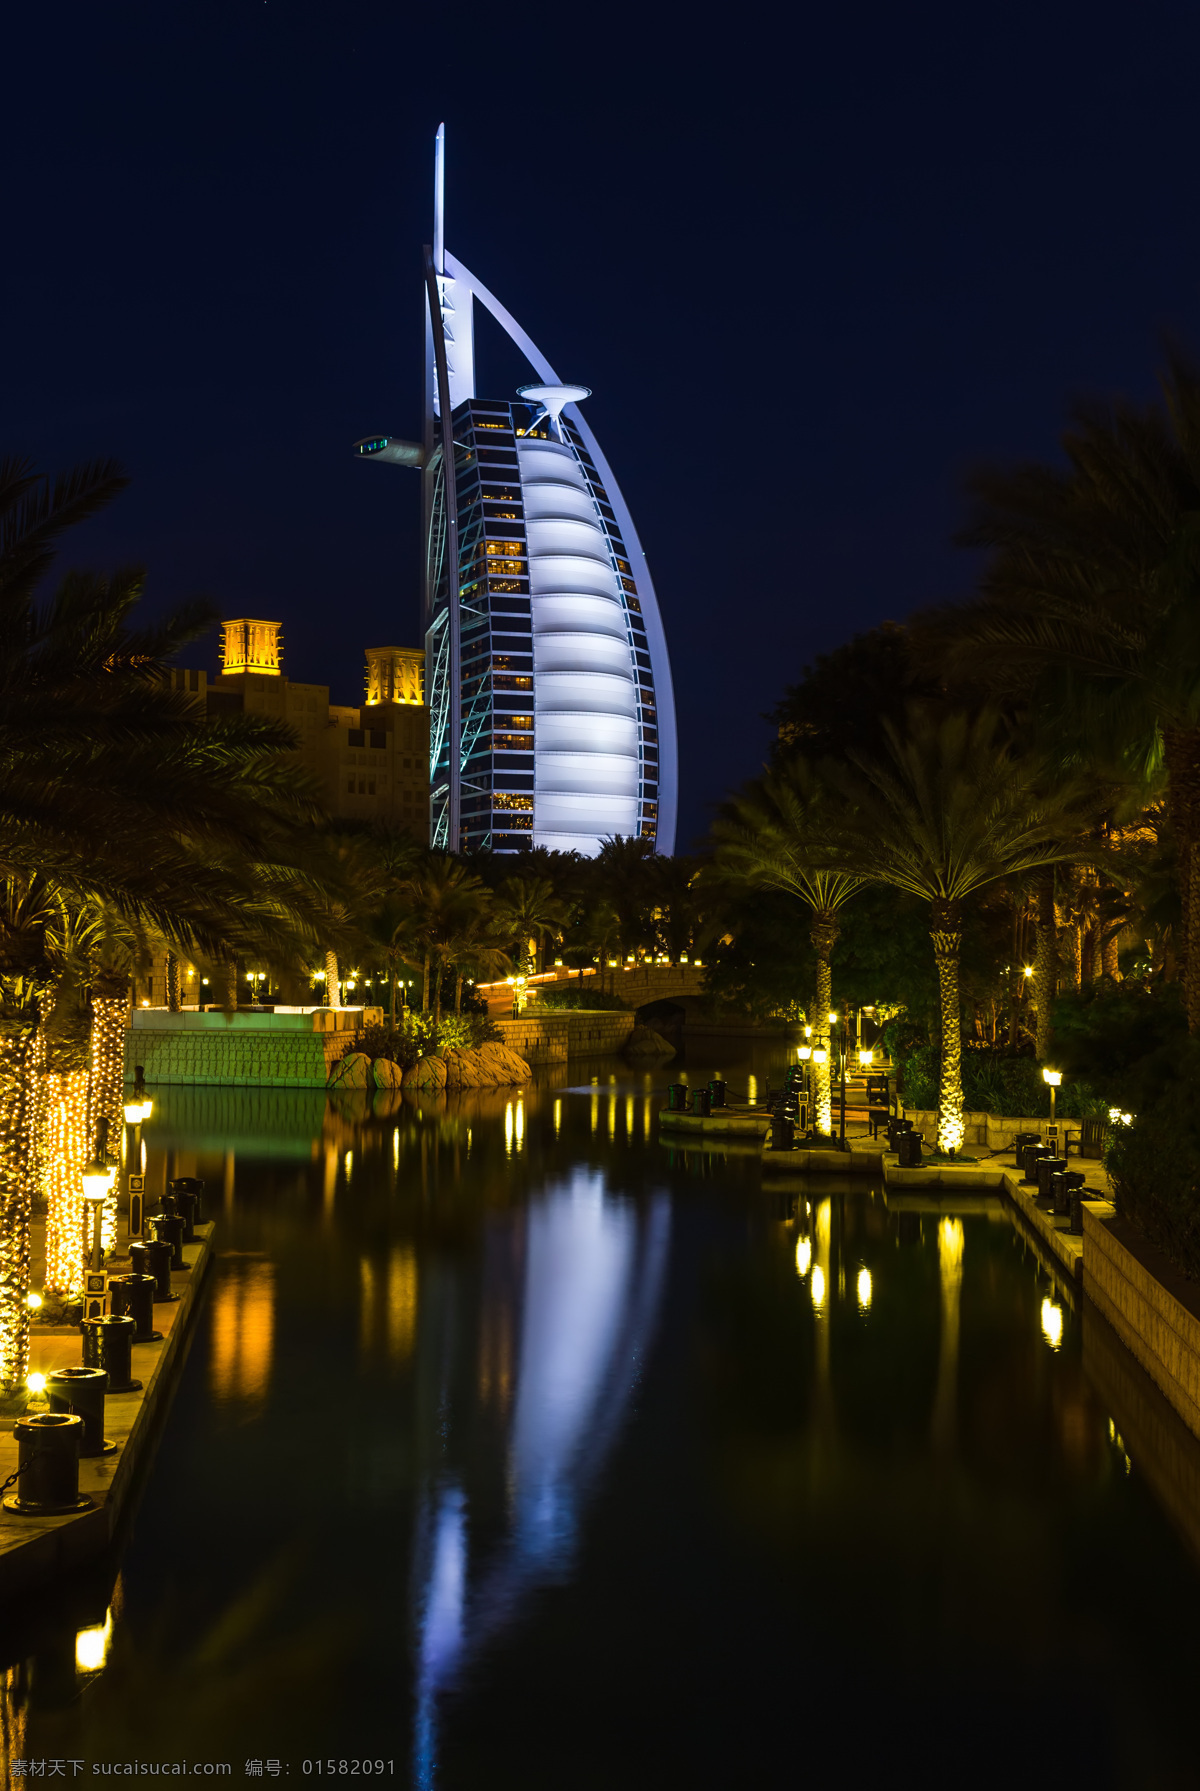 迪拜 帆船 酒店 风景 帆船酒店 迪拜风景 城市风光 美丽风景 风景摄影 美丽景色 旅游景点 环境家居